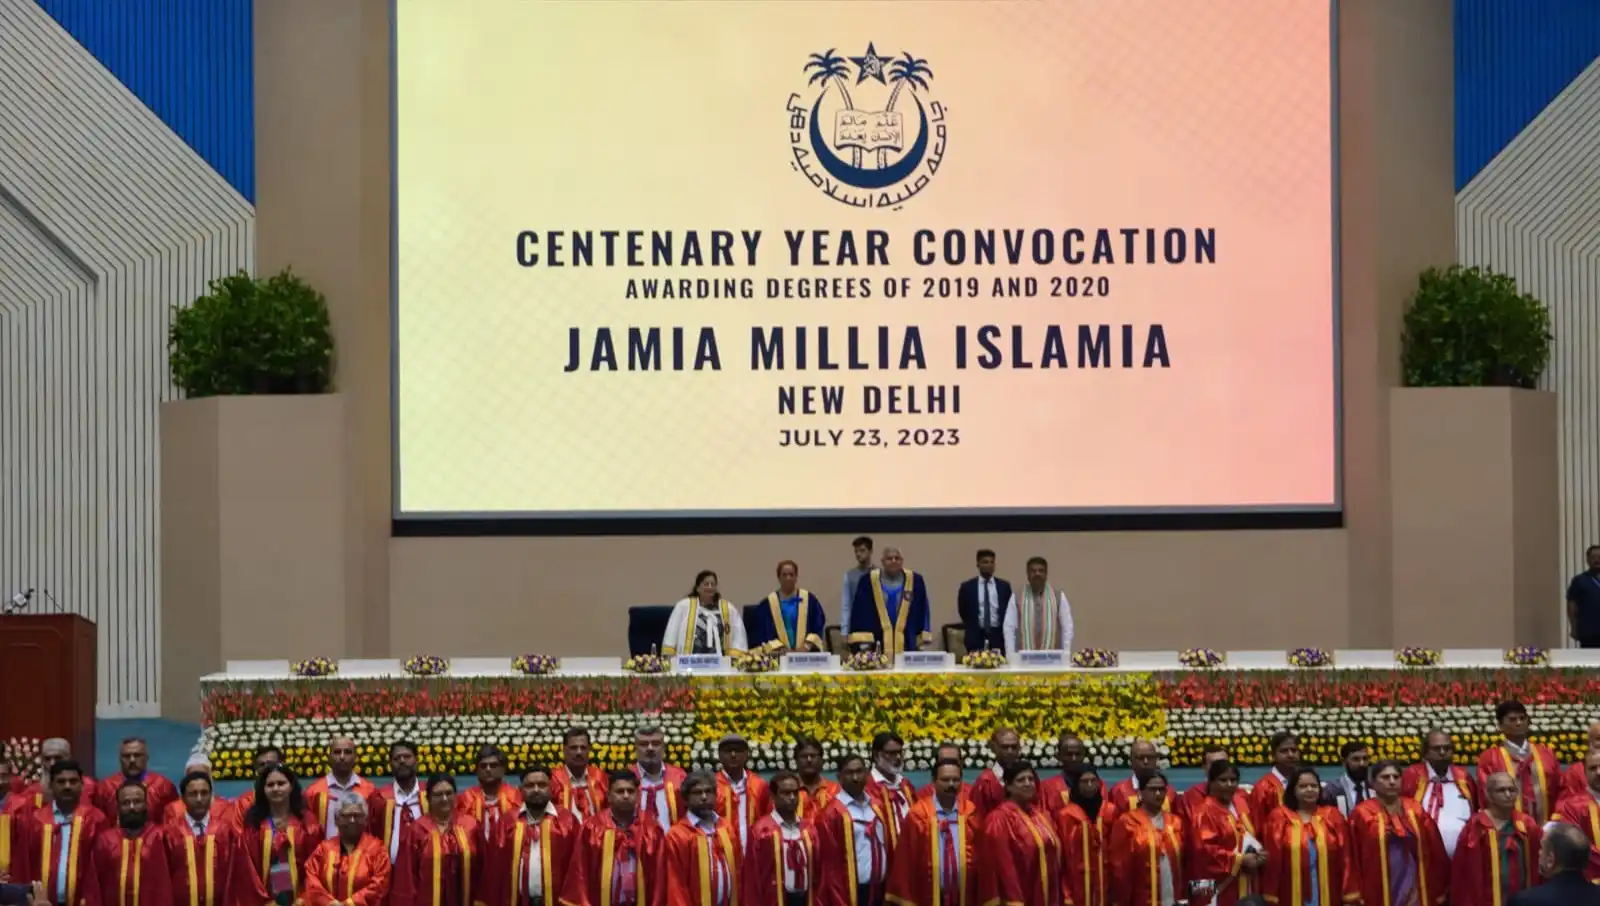 جامعہ ملیہ اسلامیہ کو میڈیکل کالج کا تحفہ،جامعہ برادری میں خوشی کی لہر